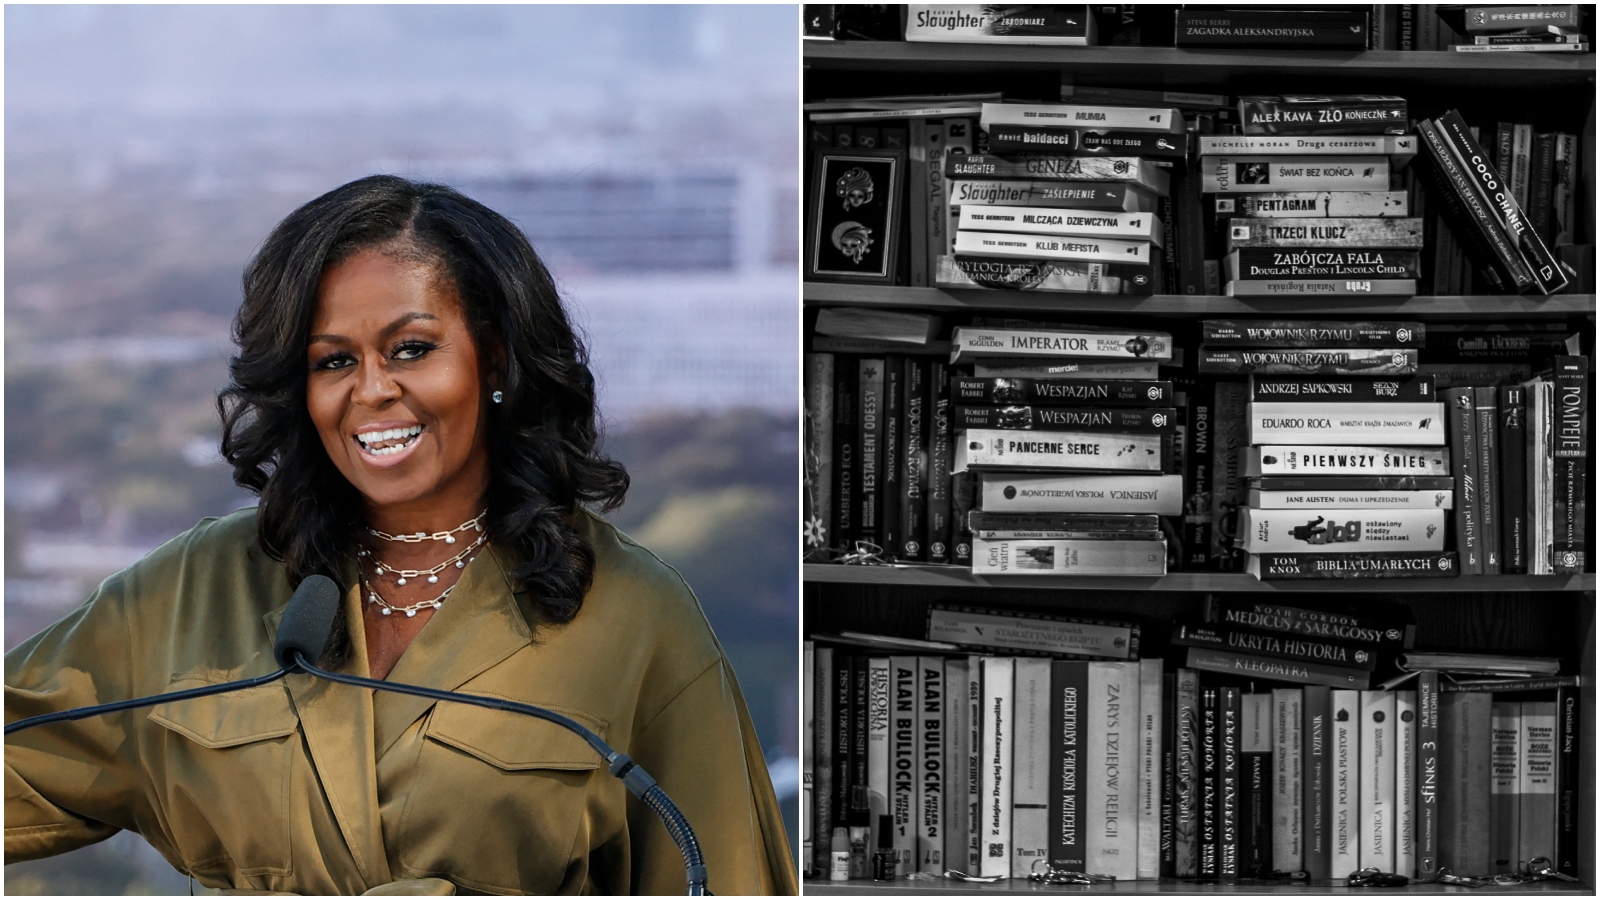 Vsi govorijo o Barackovih knjižnih predlogih, nas pa zanima, kaj bere Michelle Obama